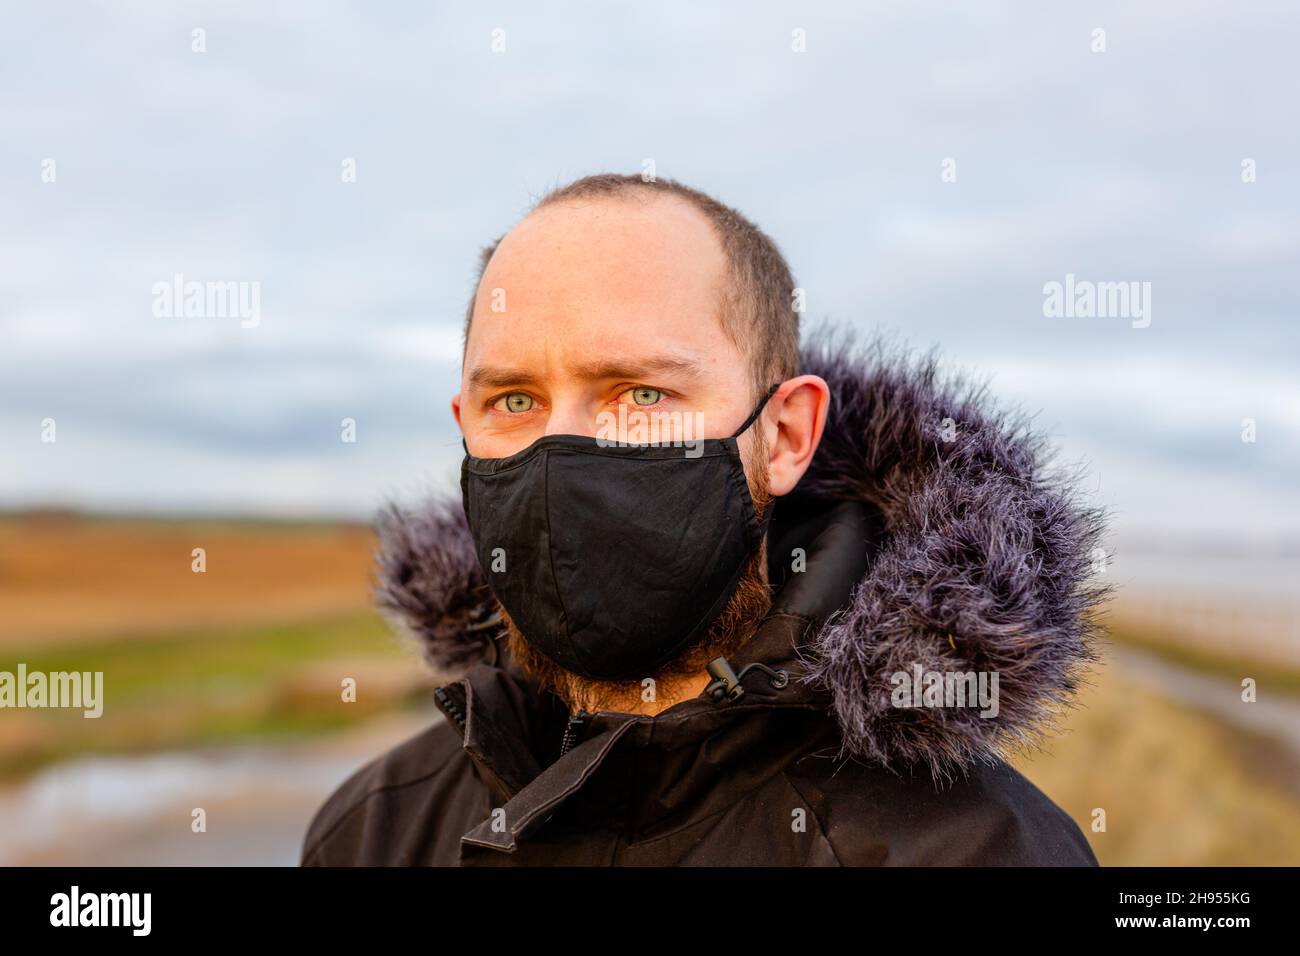 Un giovane uomo che indossa una maschera nera lavabile durante la pandemia del virus della corona di Covid-19 Foto Stock